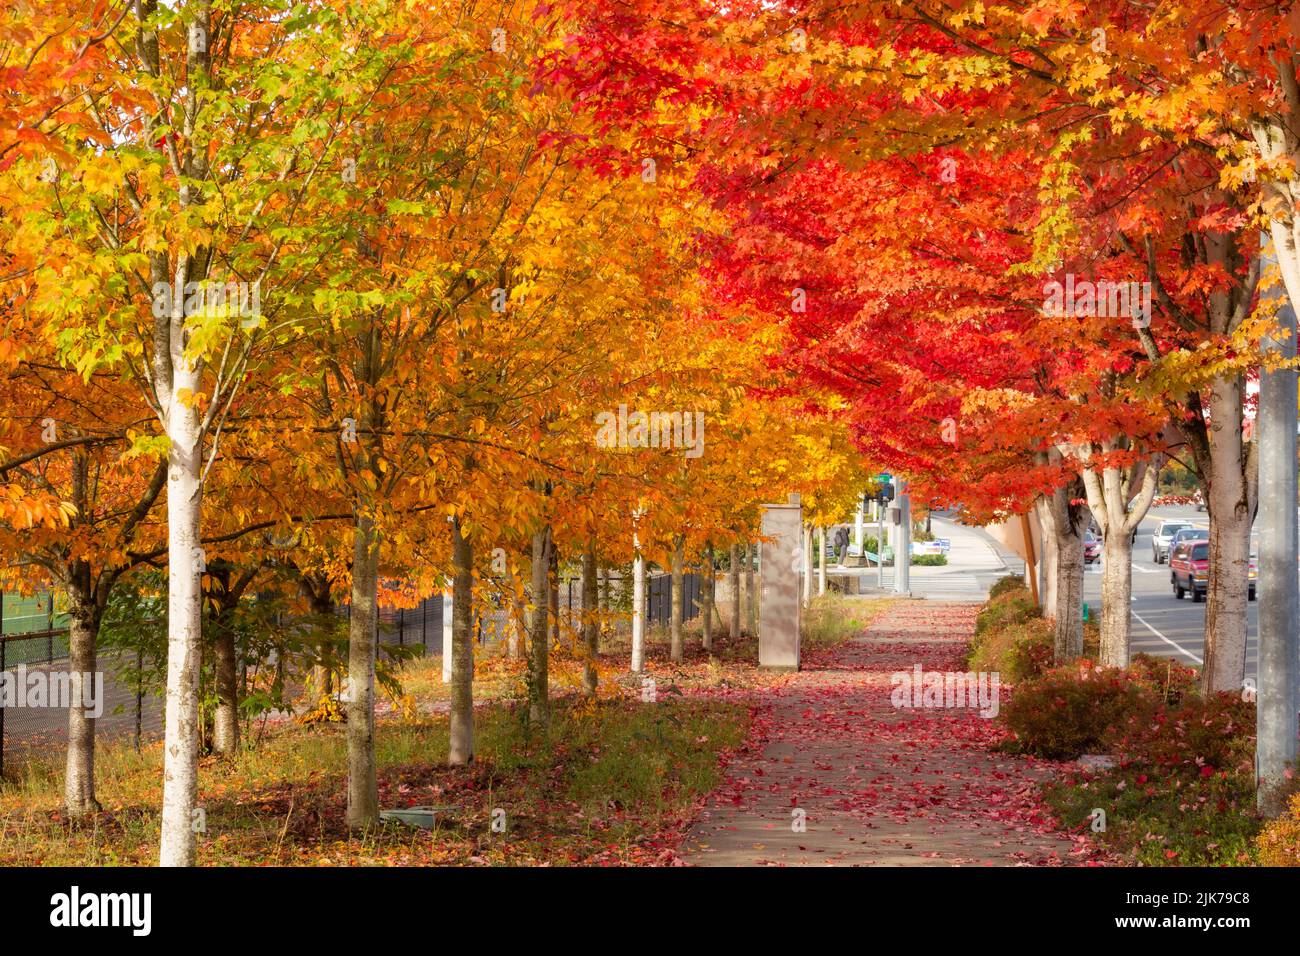 WA21823-00...WASHINGTON - feuilles colorées à l'automne bordant les trottoirs à Woodinville, Washington. Banque D'Images